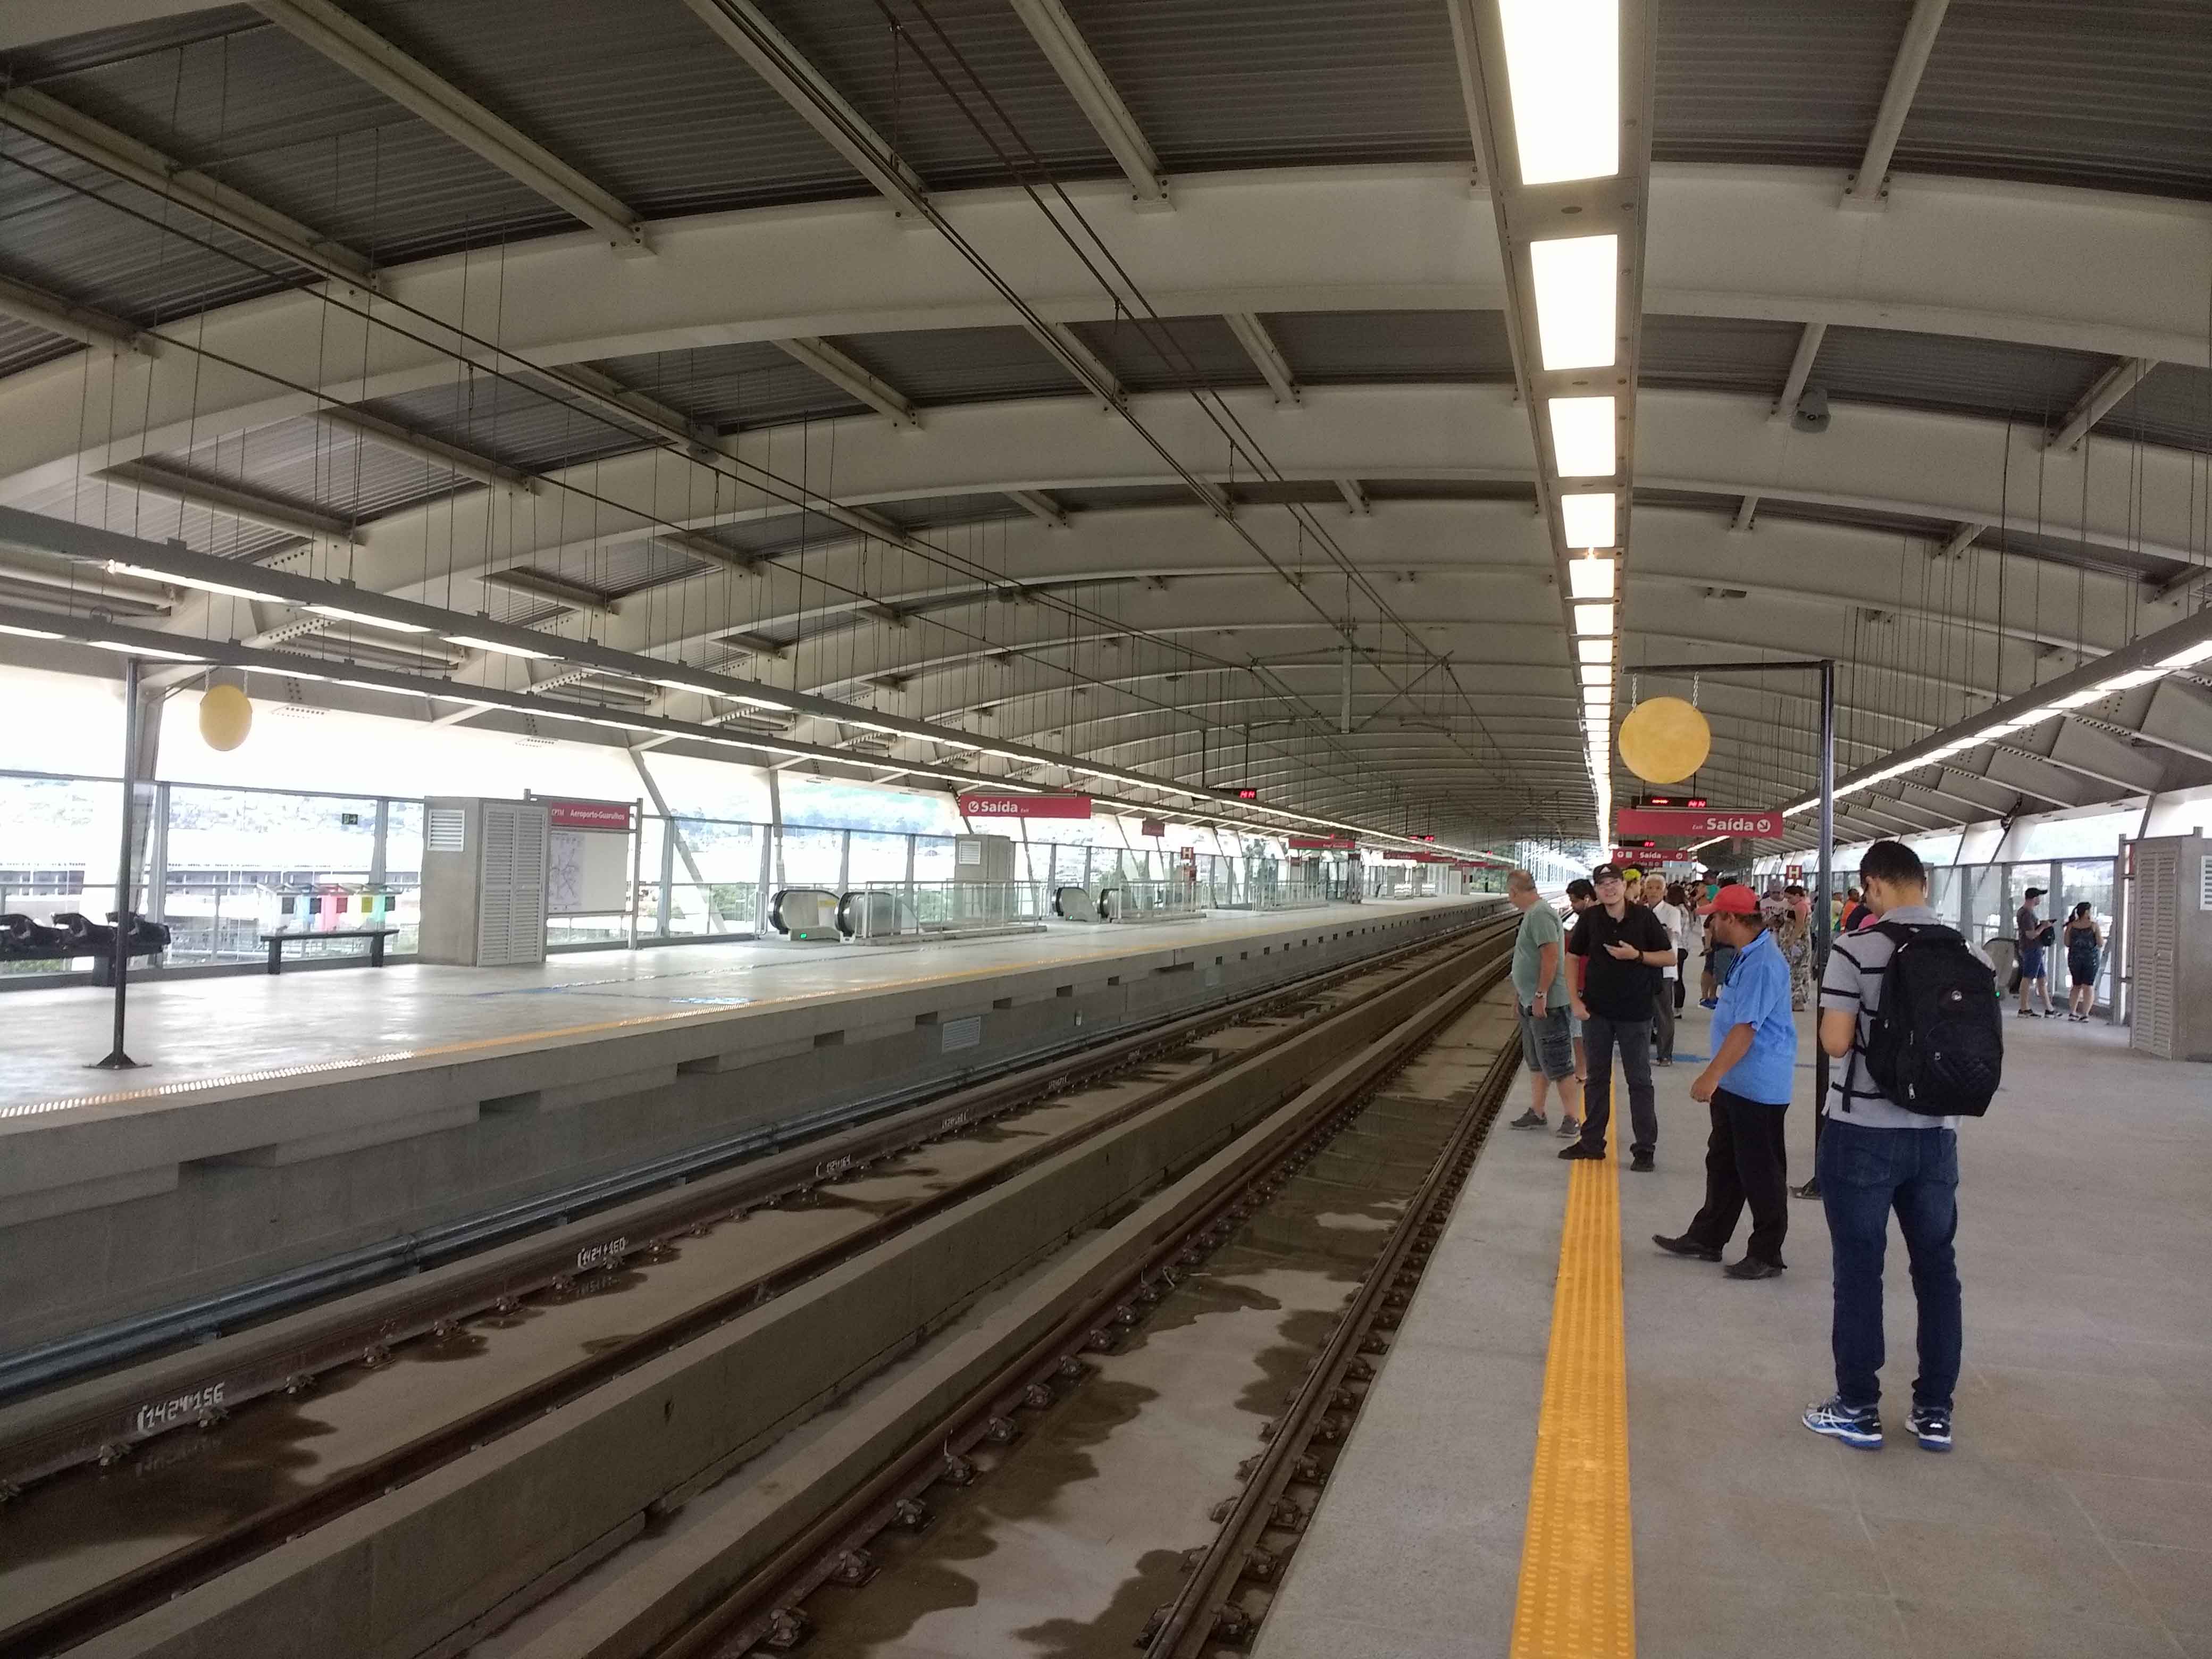 plataforma da estação aeroporto Linha 13-Jade